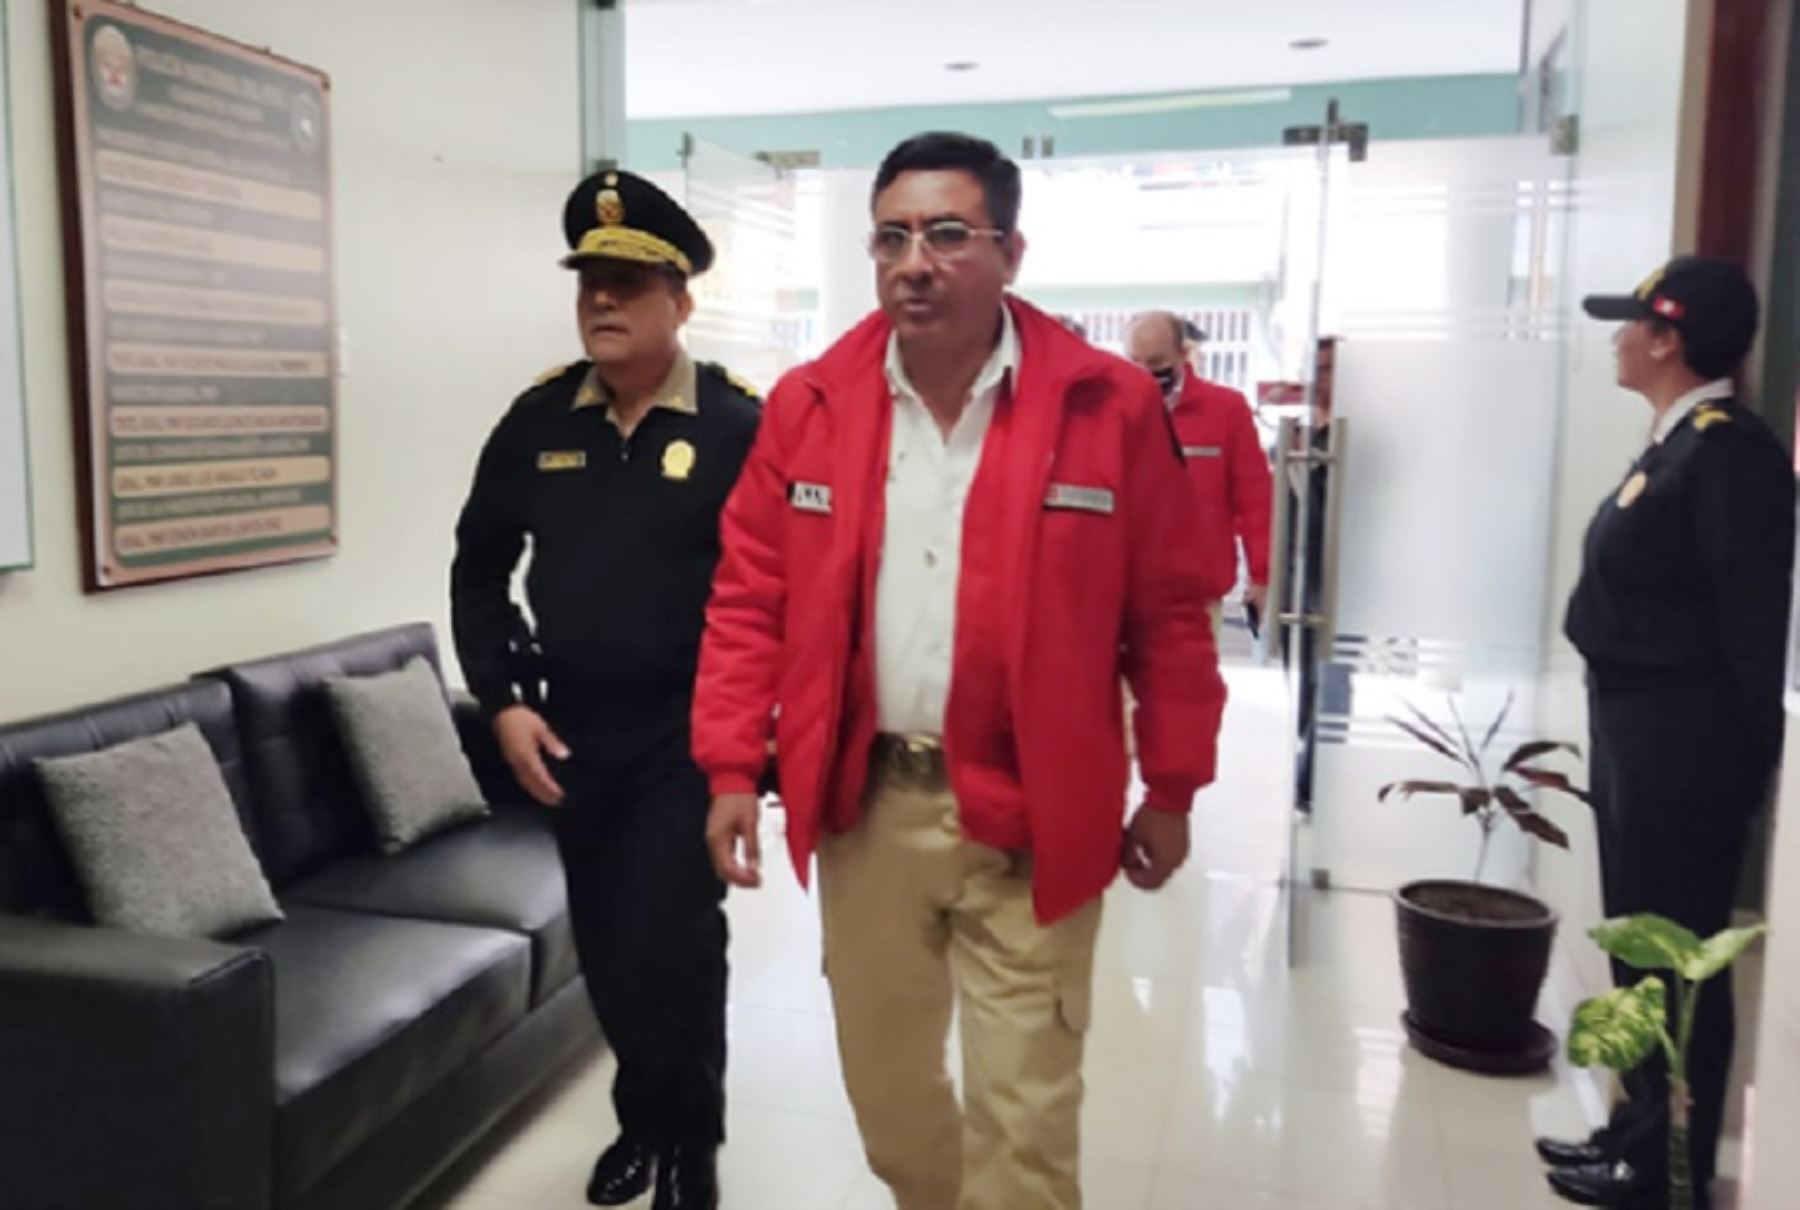 El ministro del Interior, Willy Huerta Olivas, visitó hoy la región Lambayeque para coordinar, verificar y supervisar la aplicación de las políticas de seguridad ciudadana implementadas en favor de la seguridad ciudadana en esta zona del país.